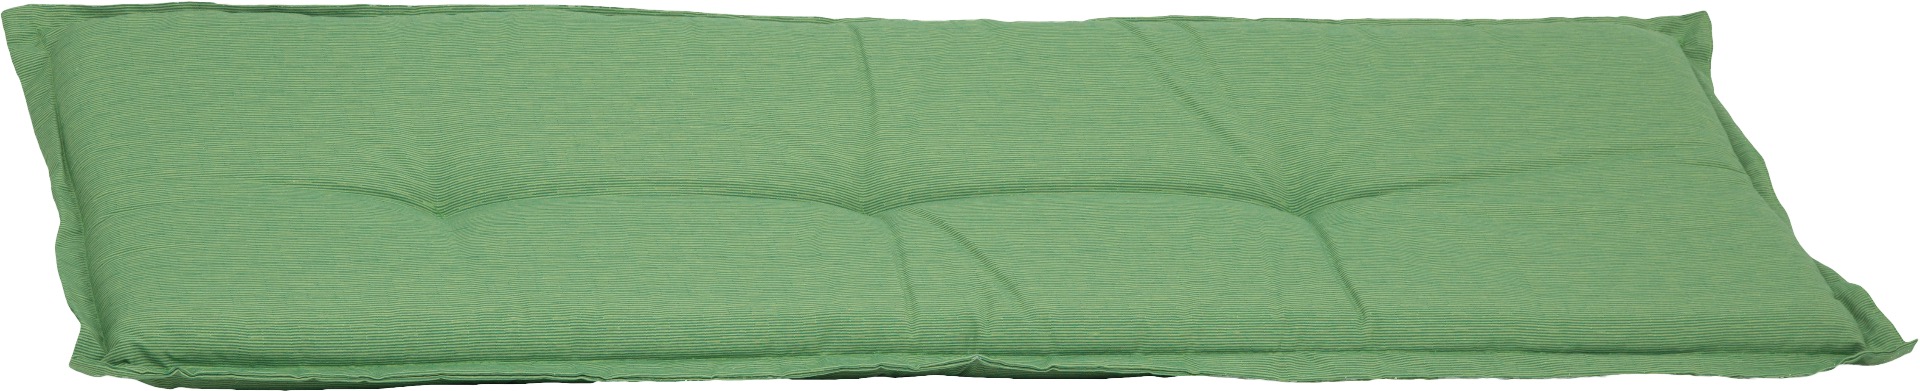 Bankauflage 3-Sitzer Sitzkissen ca. 145x45x6 cm hellgrün meliert